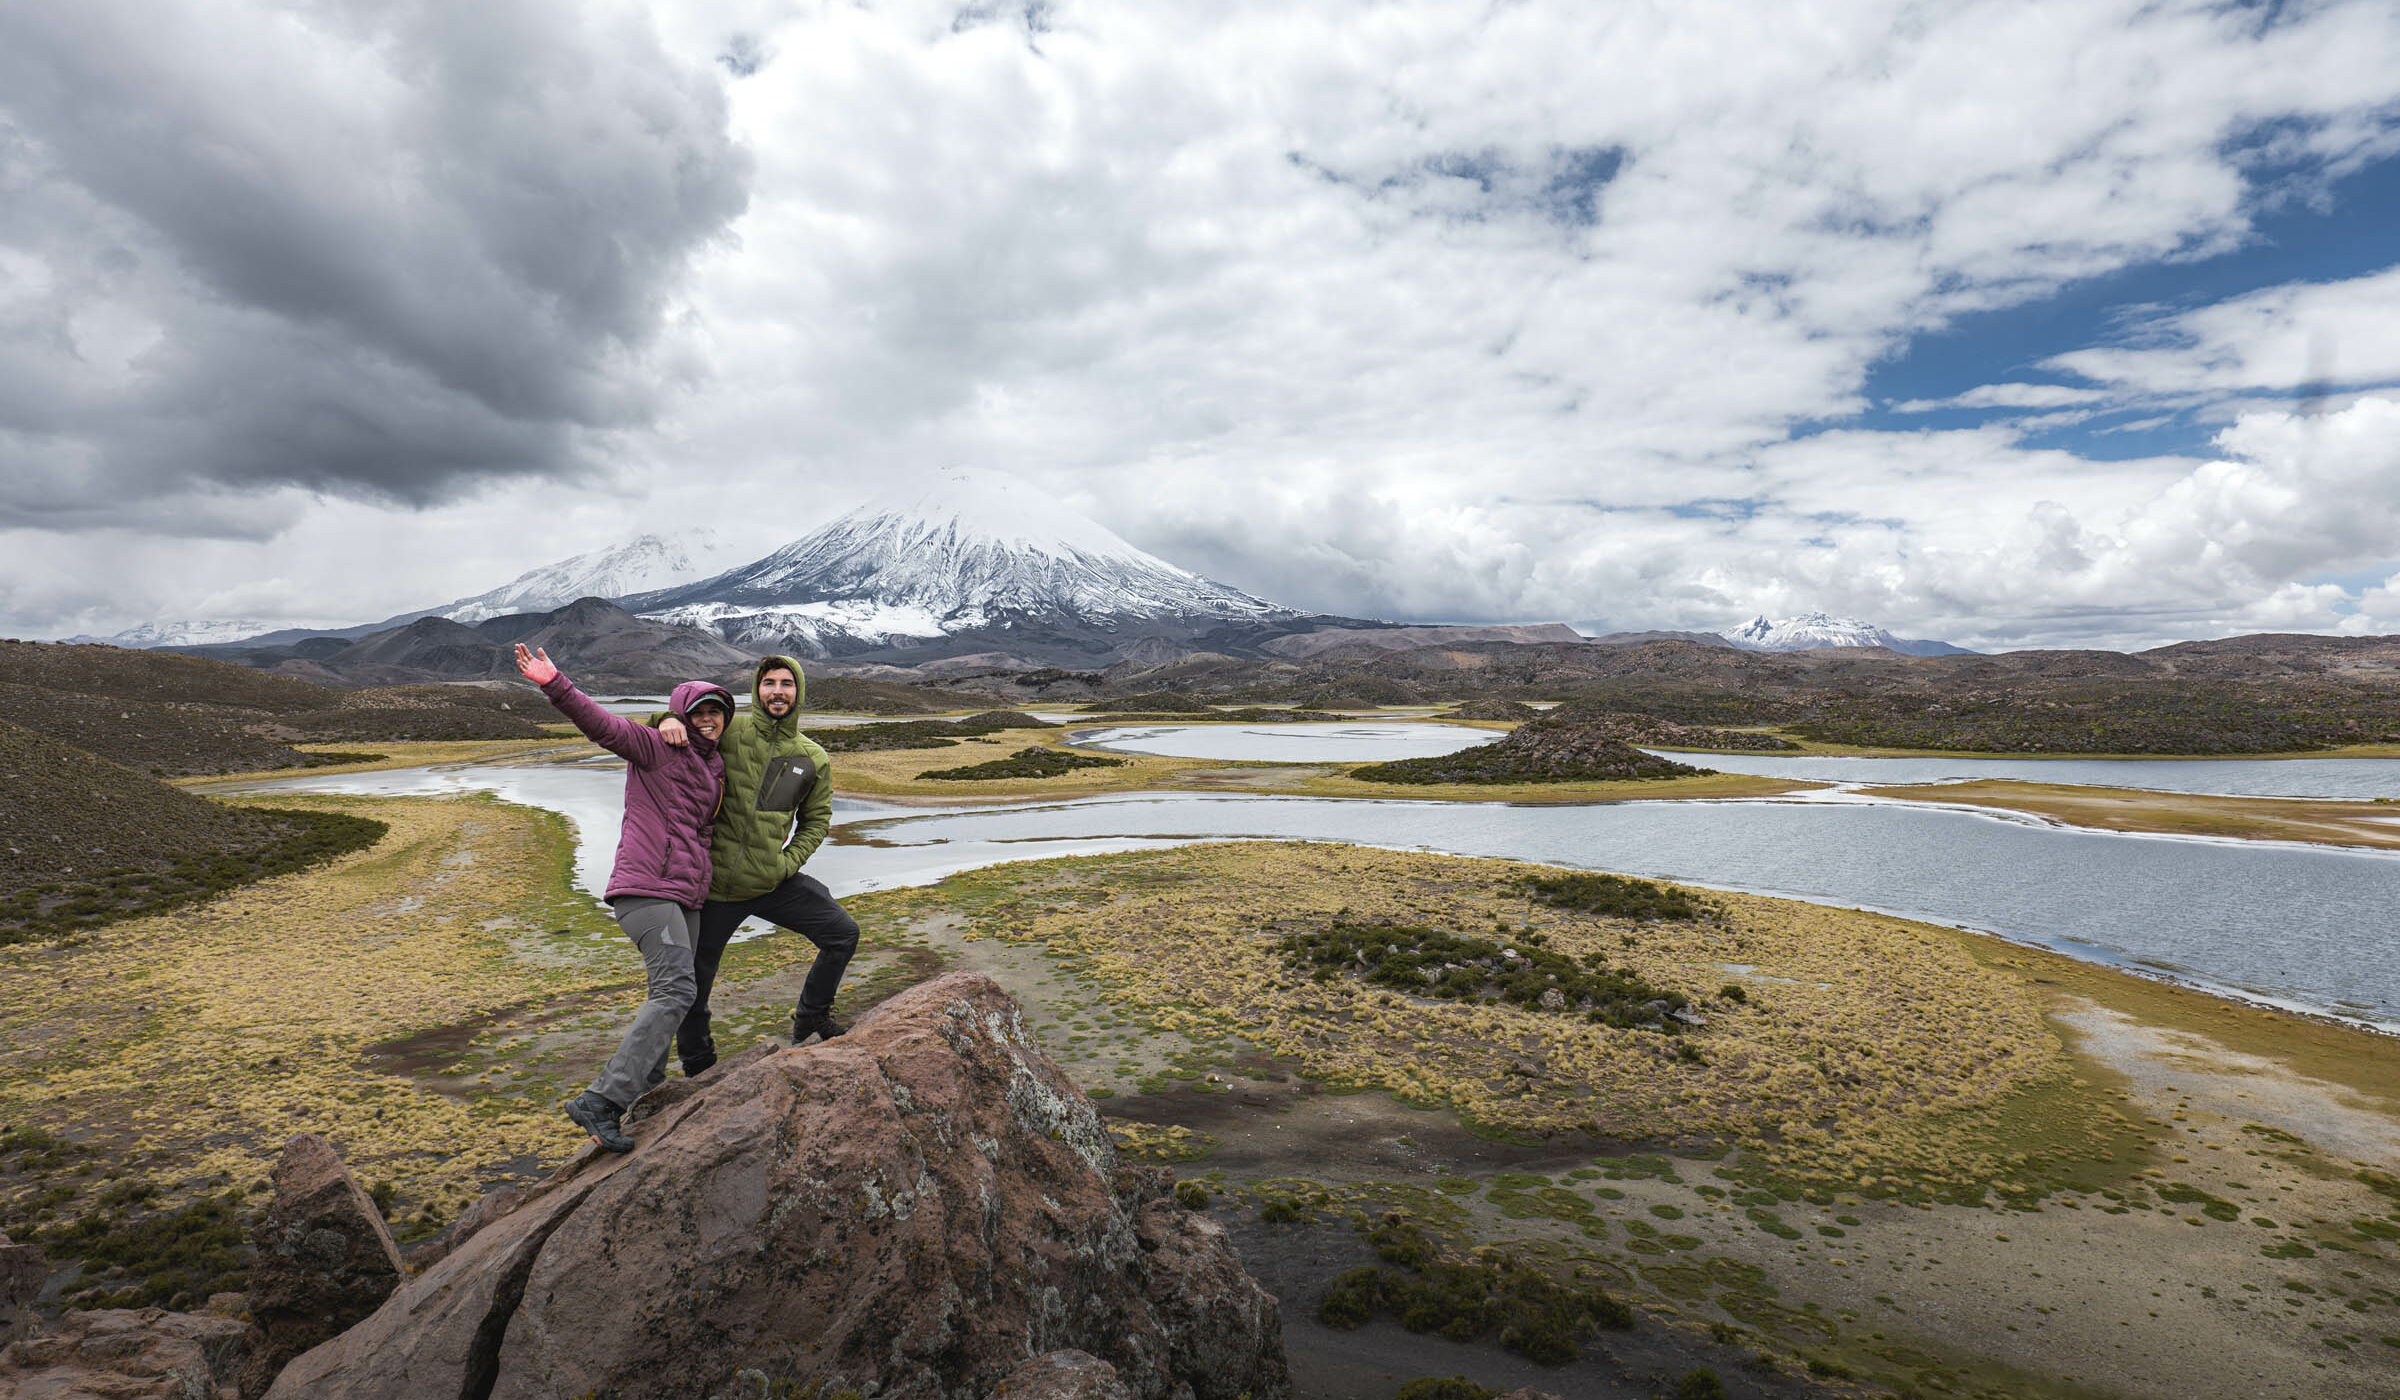 Pareja de chilenos recorrió los 46 parques nacionales durante un año, a bordo de un auto eléctrico